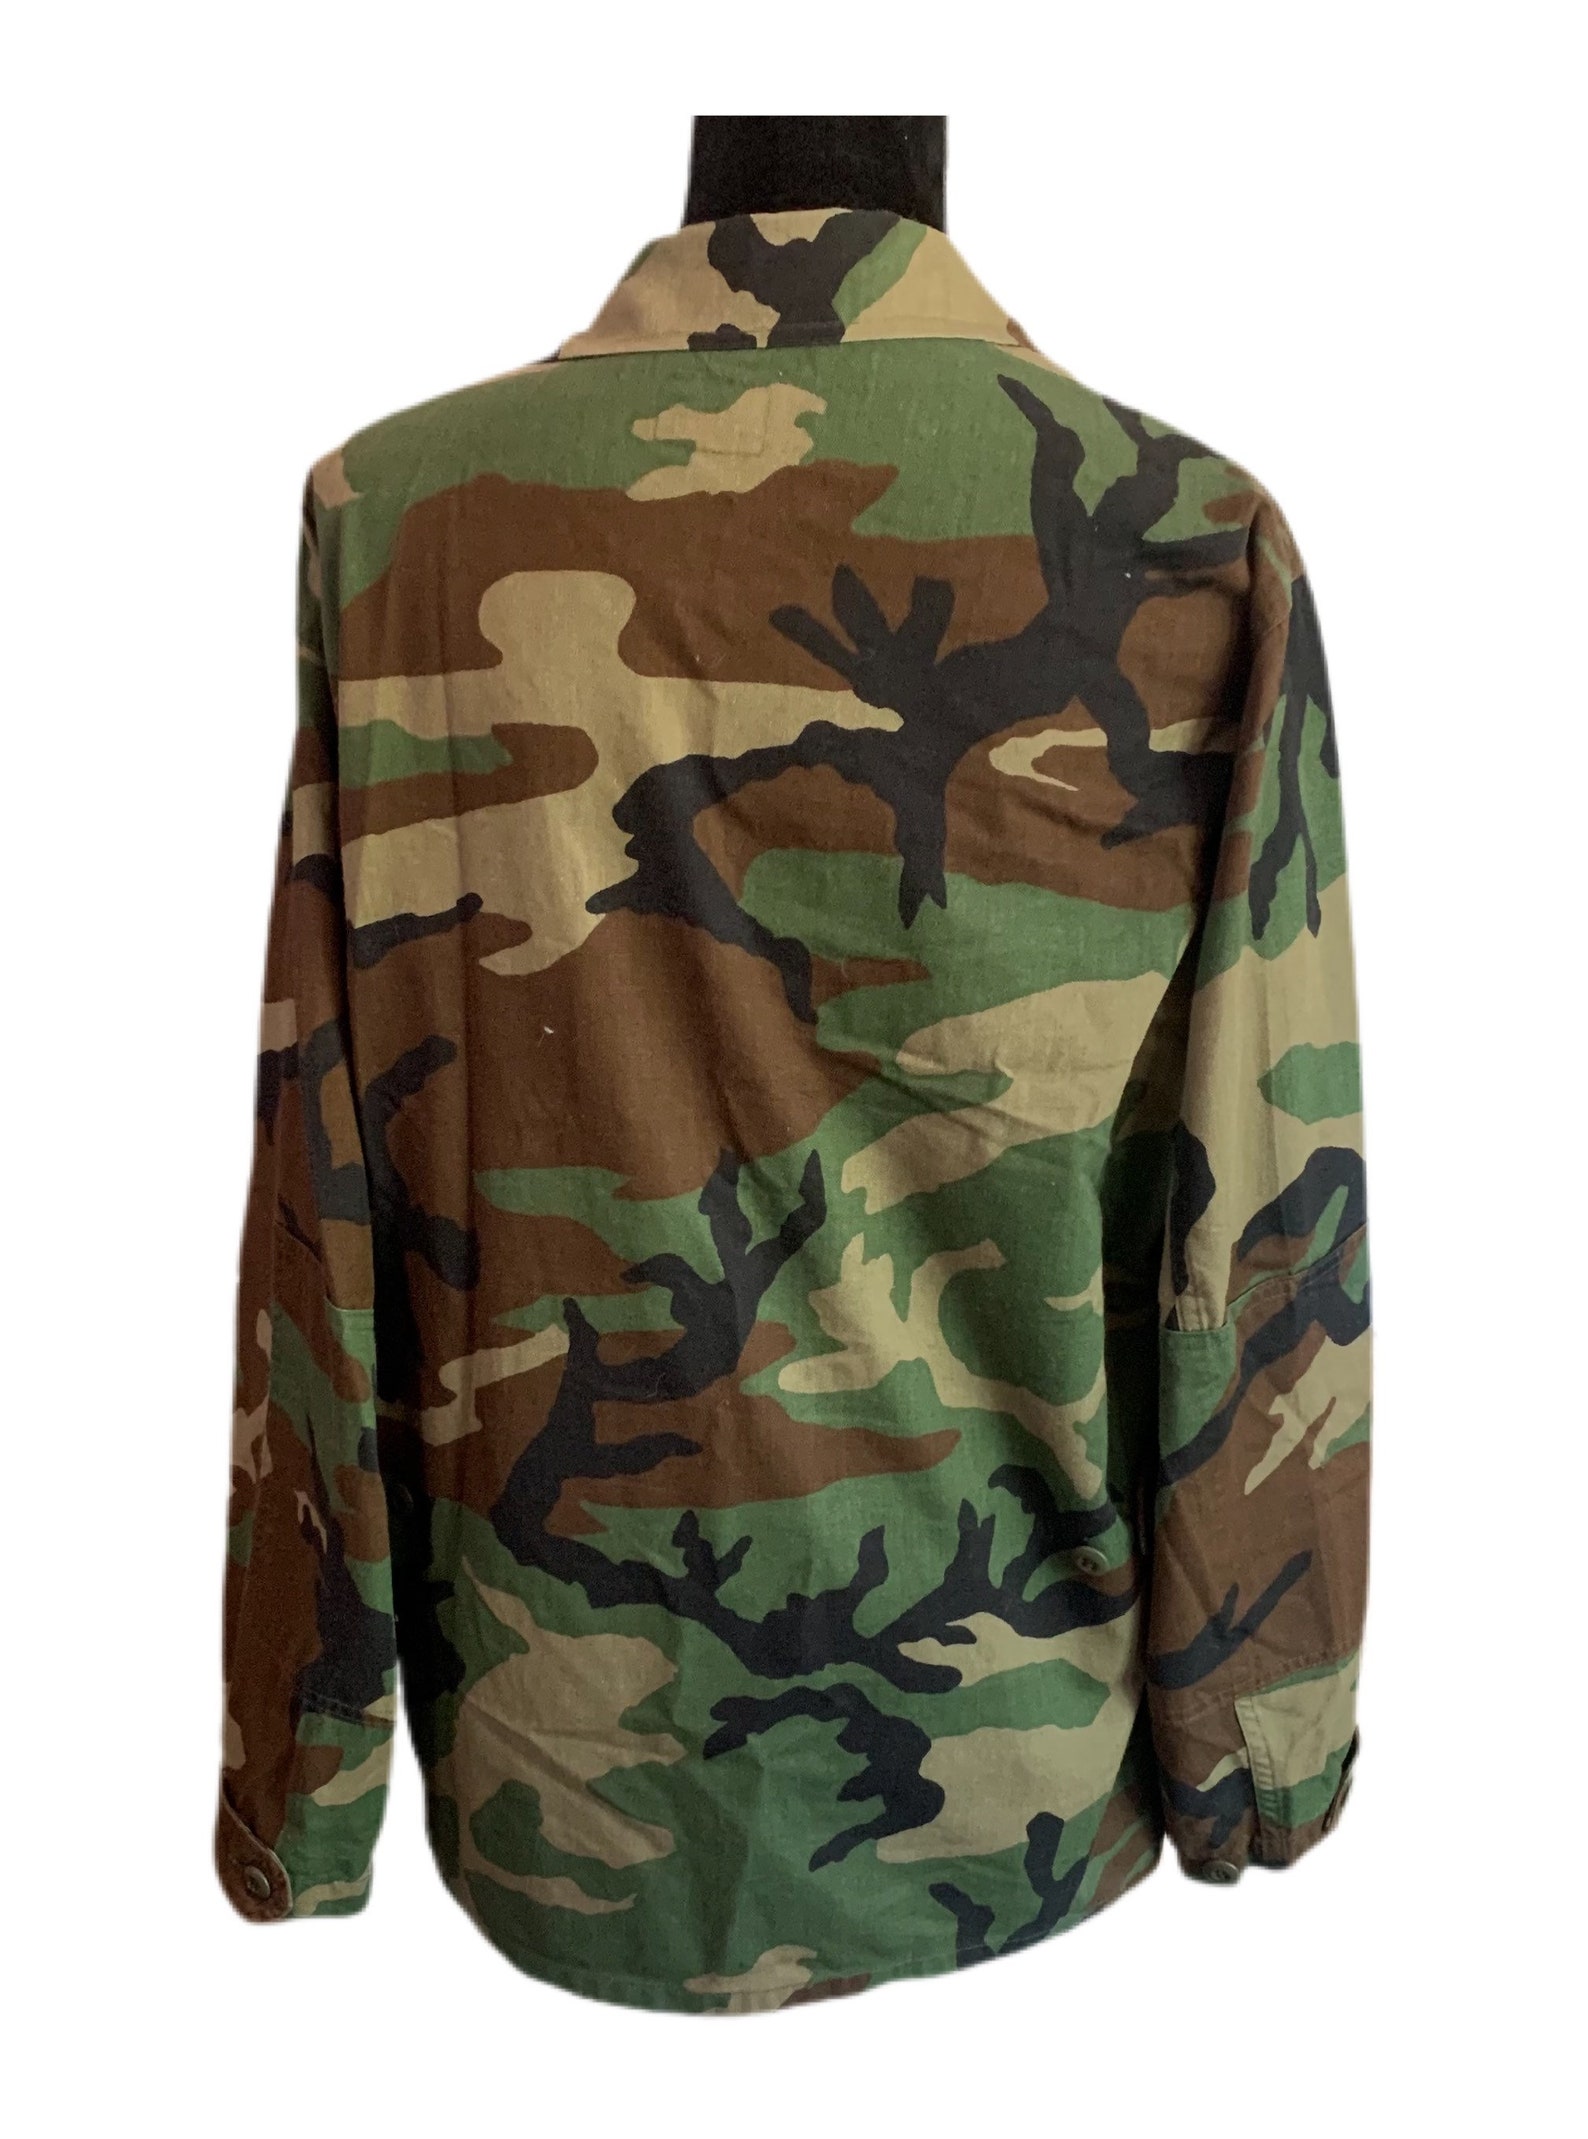 Camouflage USMC Jacket Vintage 90s Grunge Military Camo Jacket | Etsy